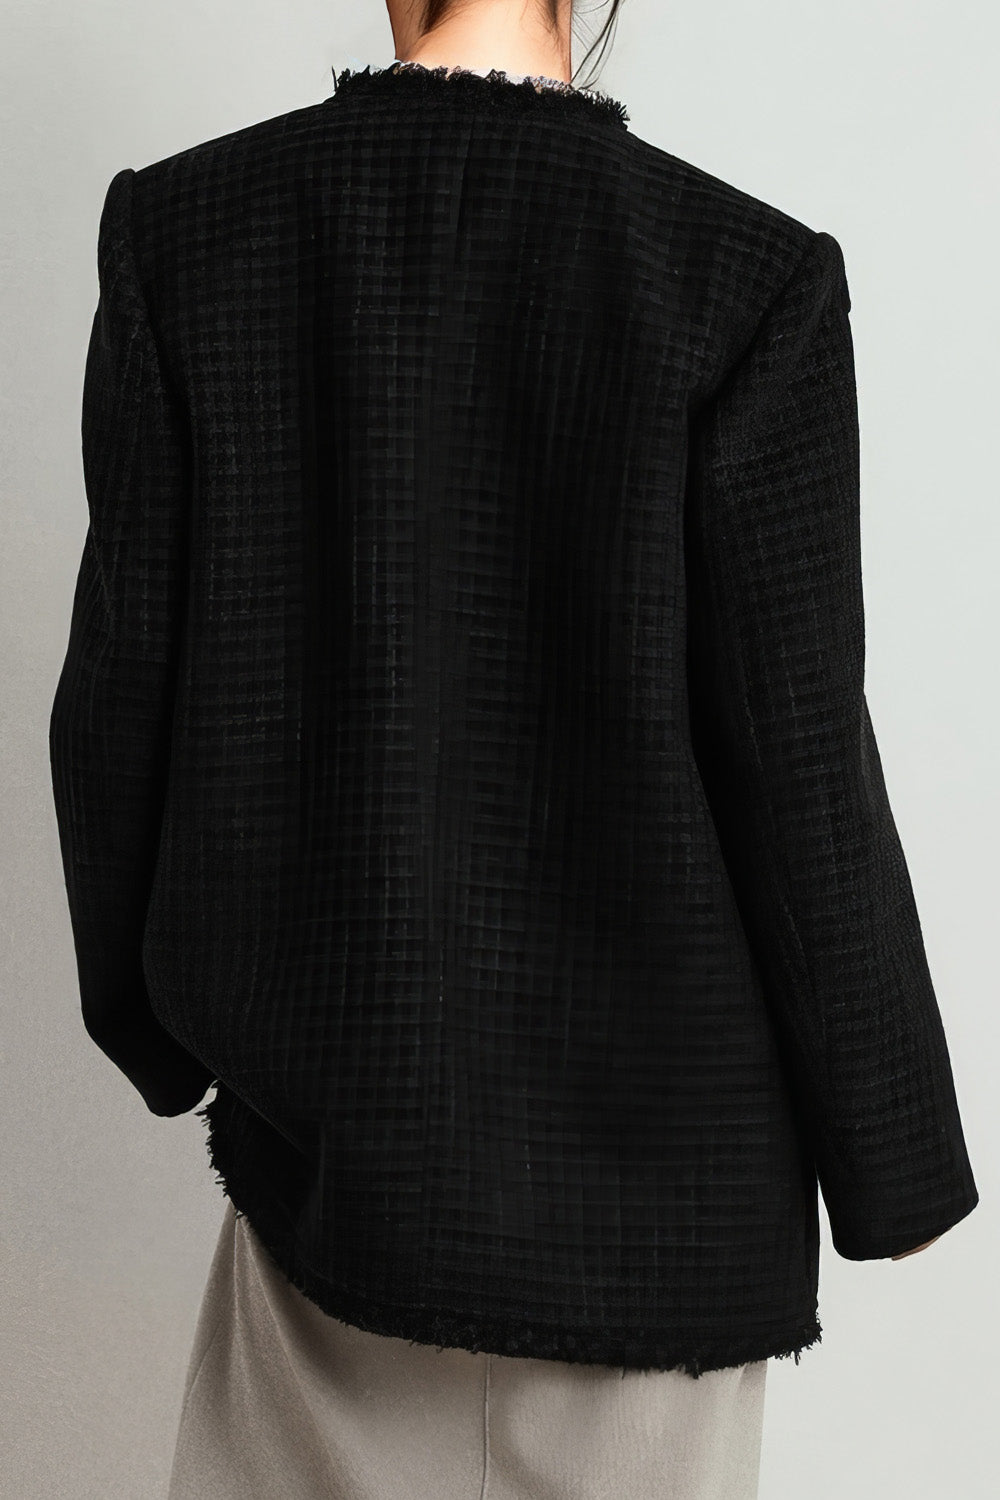 Elegancki tweedowy żakiet z frędzlami - czarny